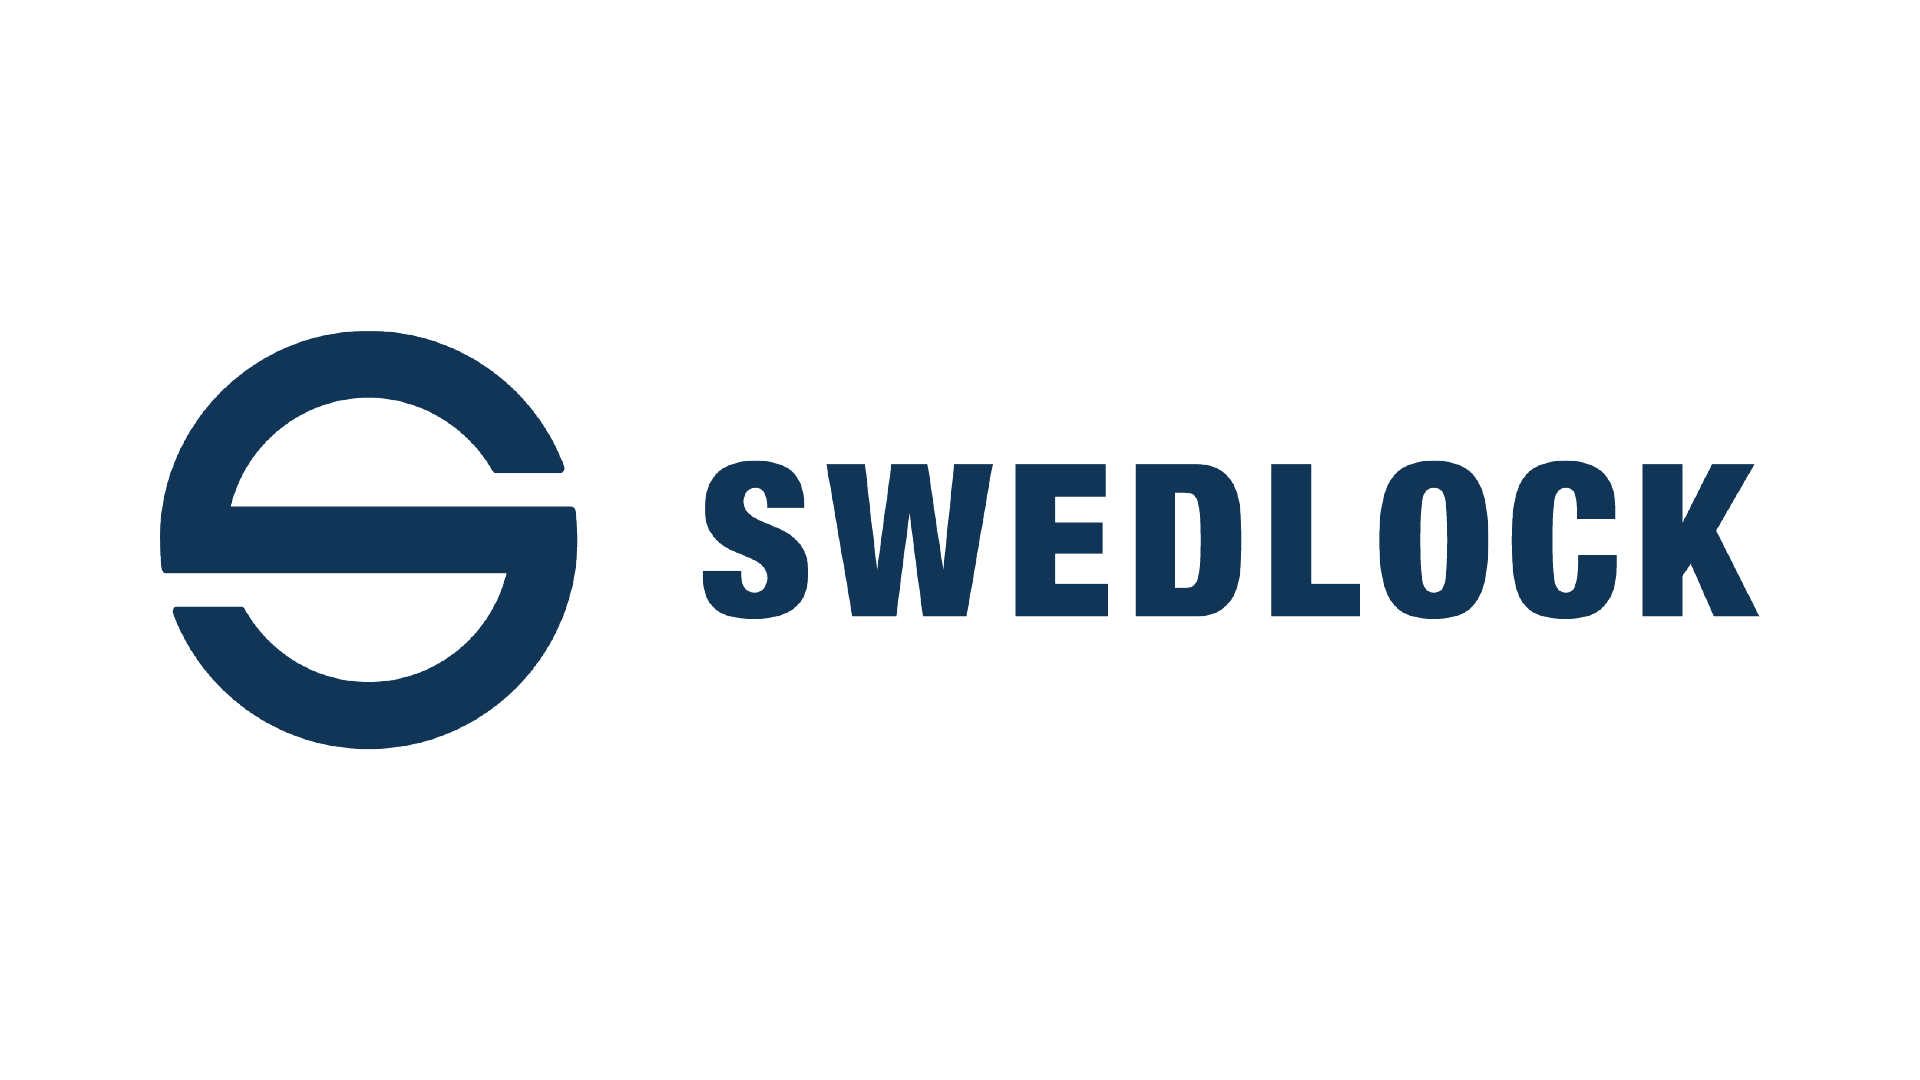 Swedlock